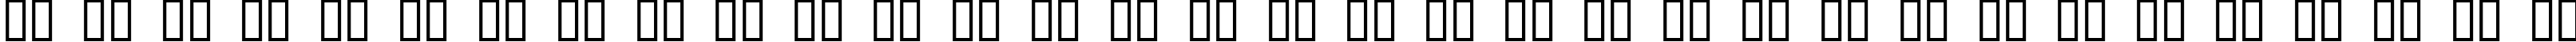 Пример написания русского алфавита шрифтом FortuneCity Outline